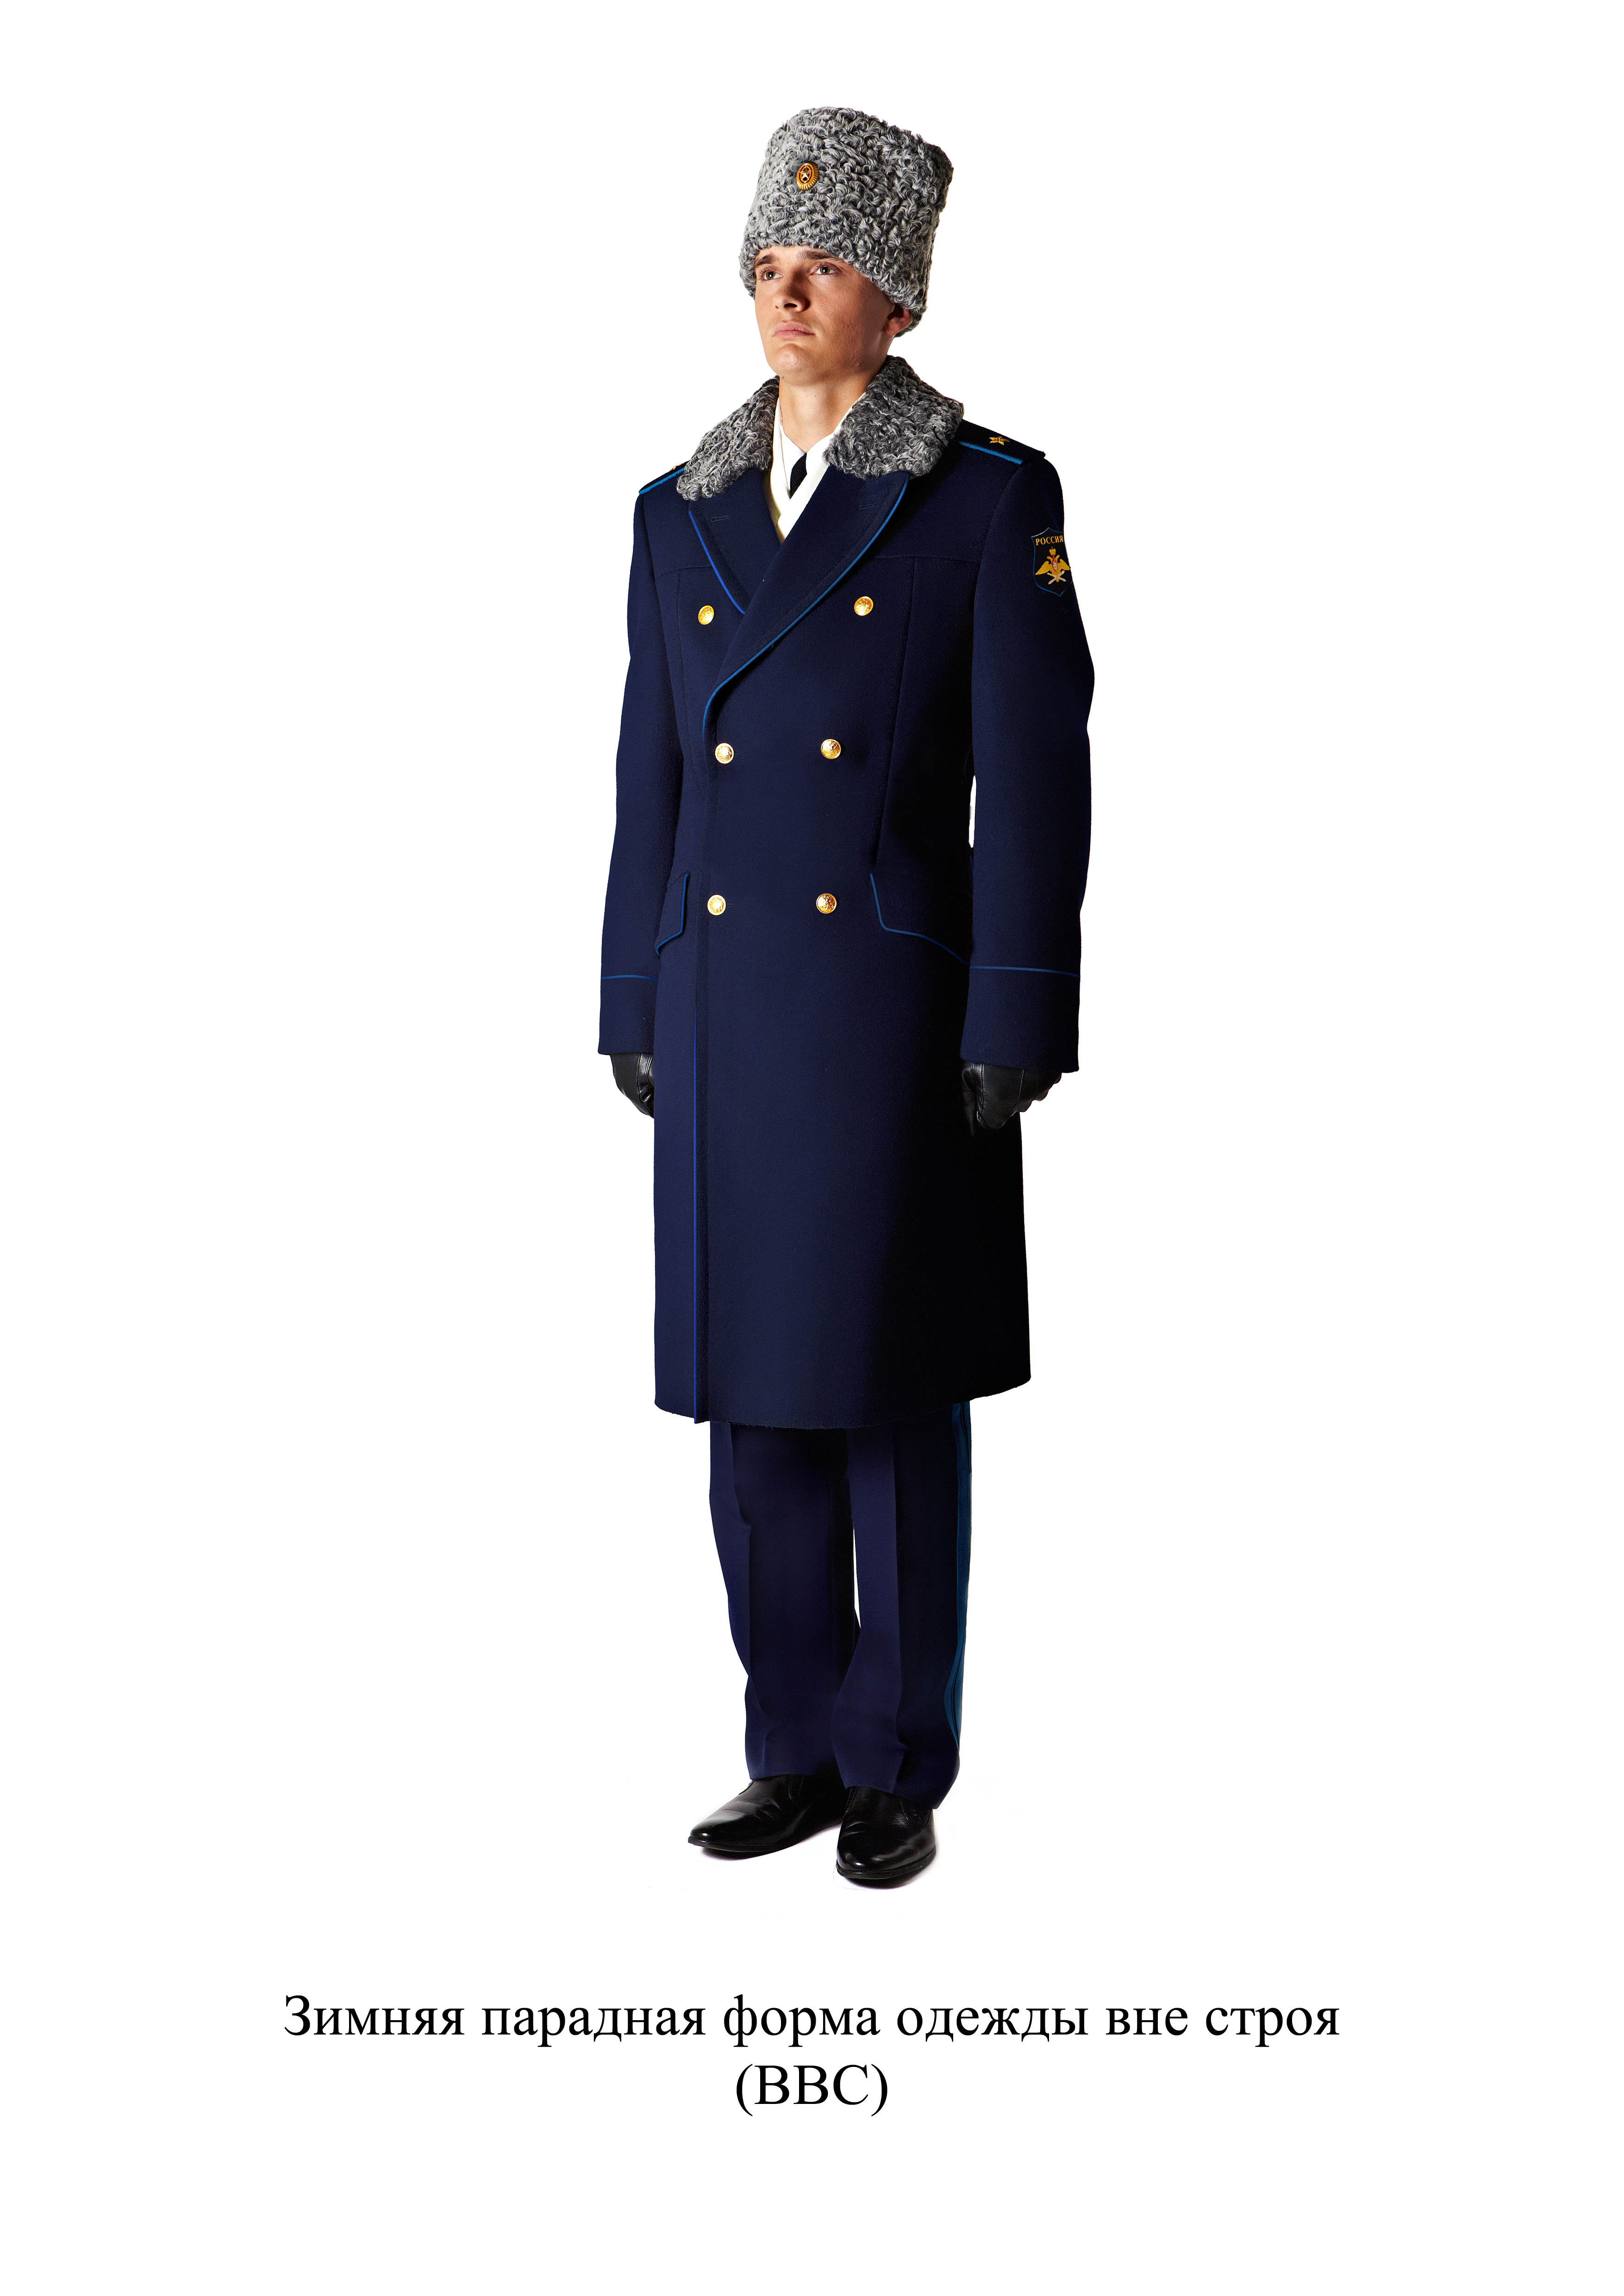 Зимняя парадная форма одежды вне строя - для ВВС